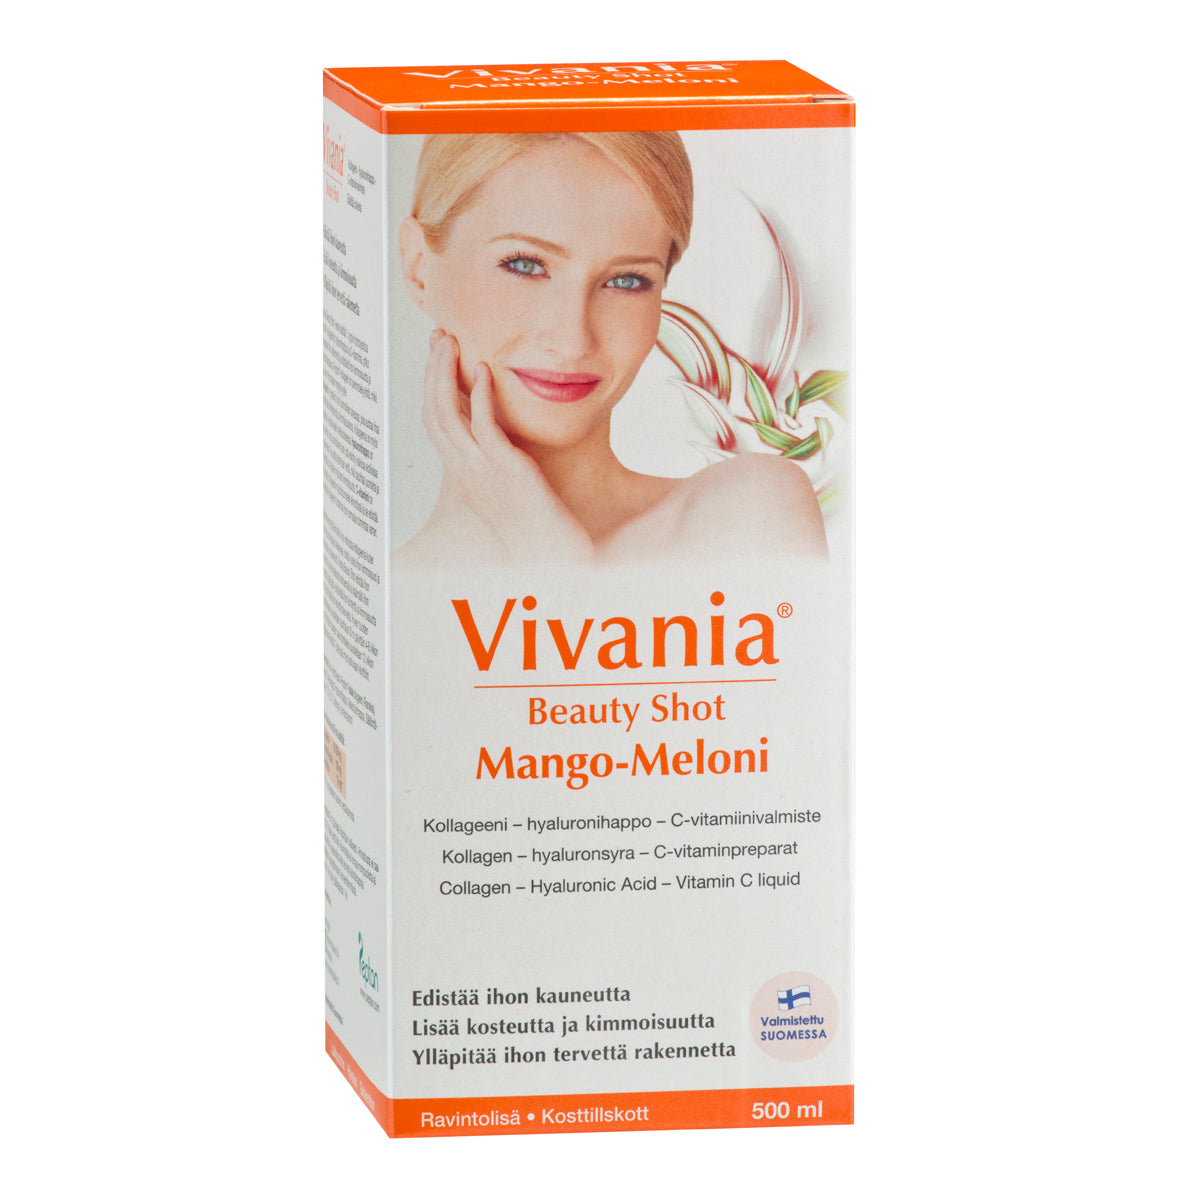 Vivania Beauty Shot Mango-Meloni-Hankintatukku-Hyvinvoinnin Tavaratalo